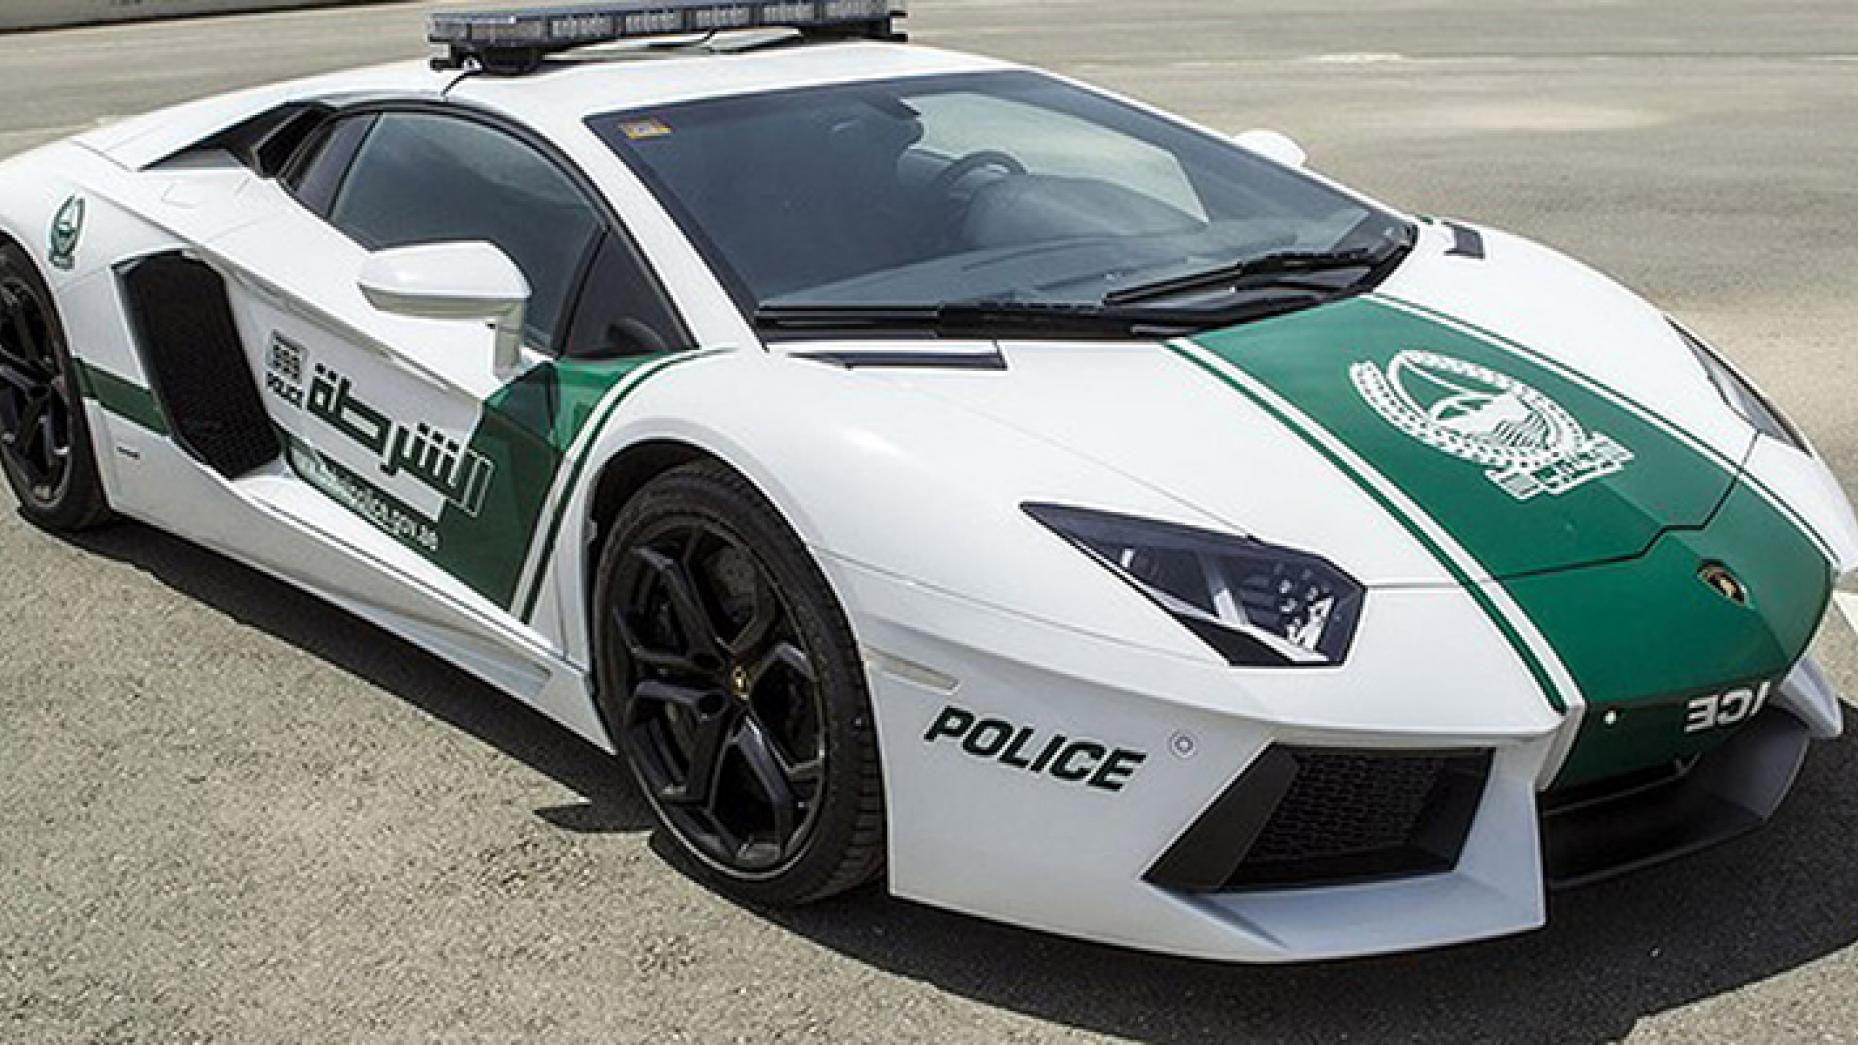 "لامبورغيني أفينتادور" سيارة شرطة دبي (top gear)